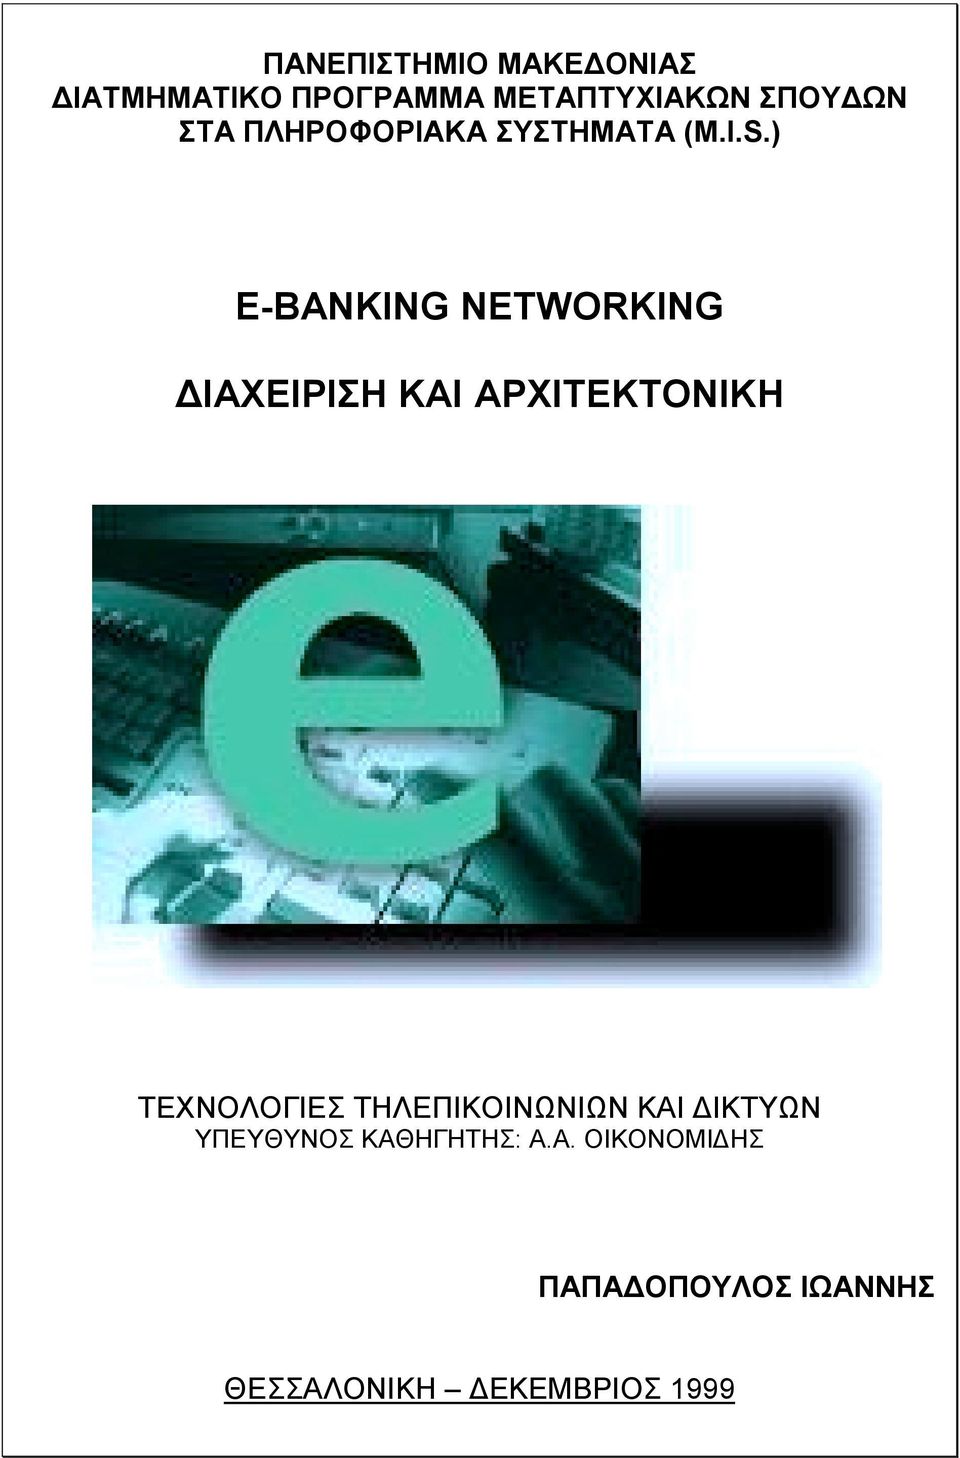 ) E-BANKING NETWORKING ΙΑΧΕΙΡΙΣΗ ΚΑΙ ΑΡΧΙΤΕΚΤΟΝΙΚΗ ΤΕΧΝΟΛΟΓΙΕΣ